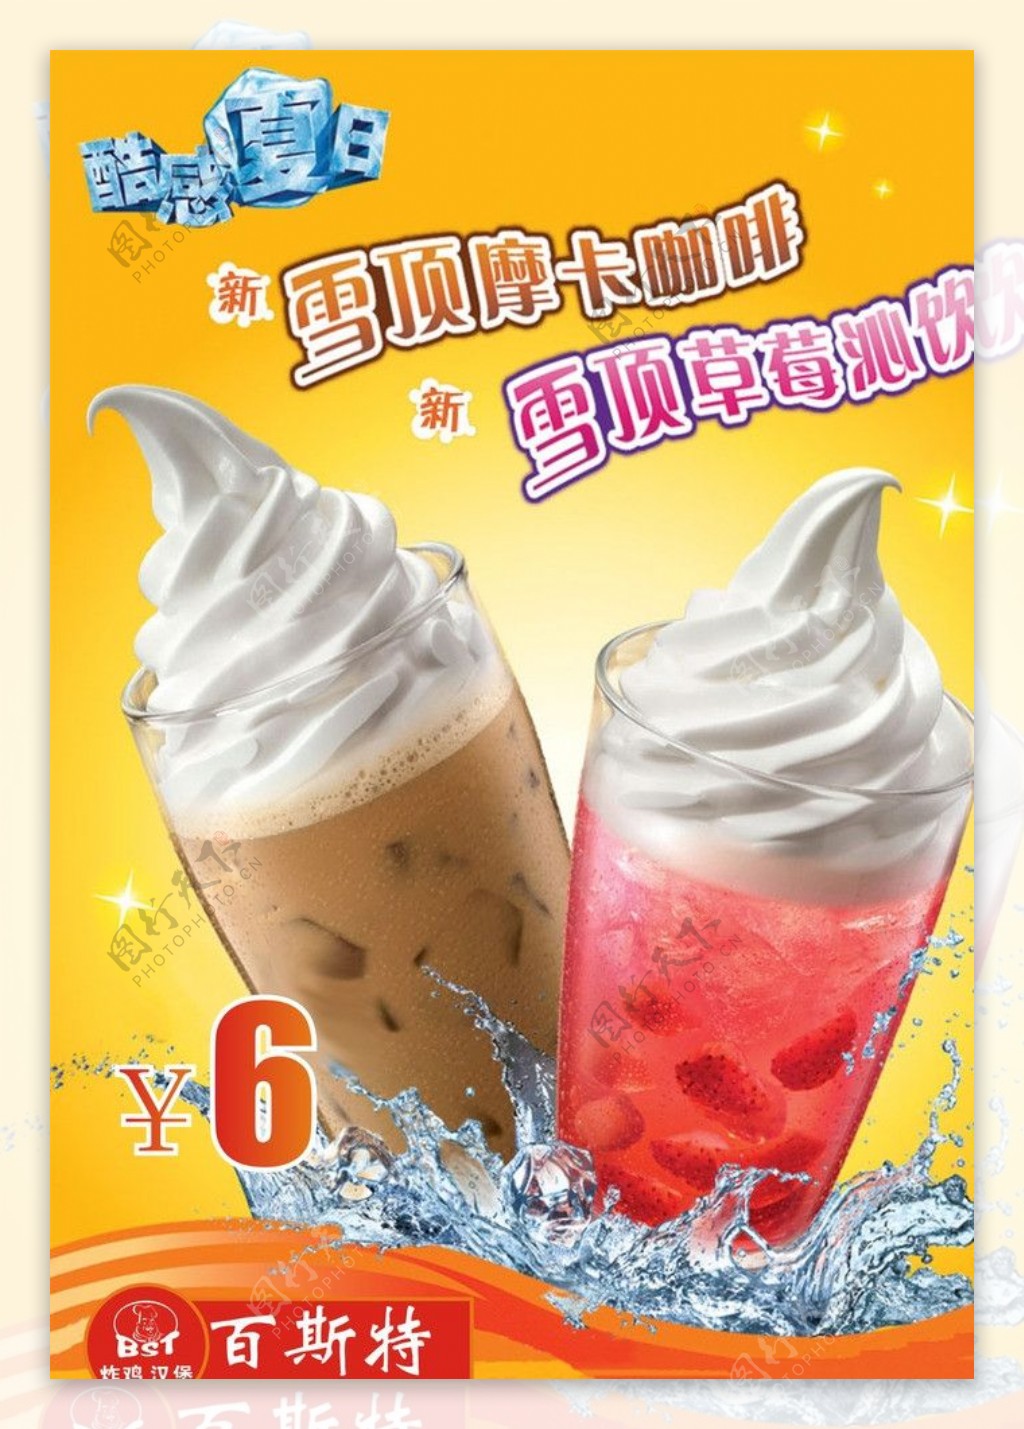 摩卡咖啡广告图片